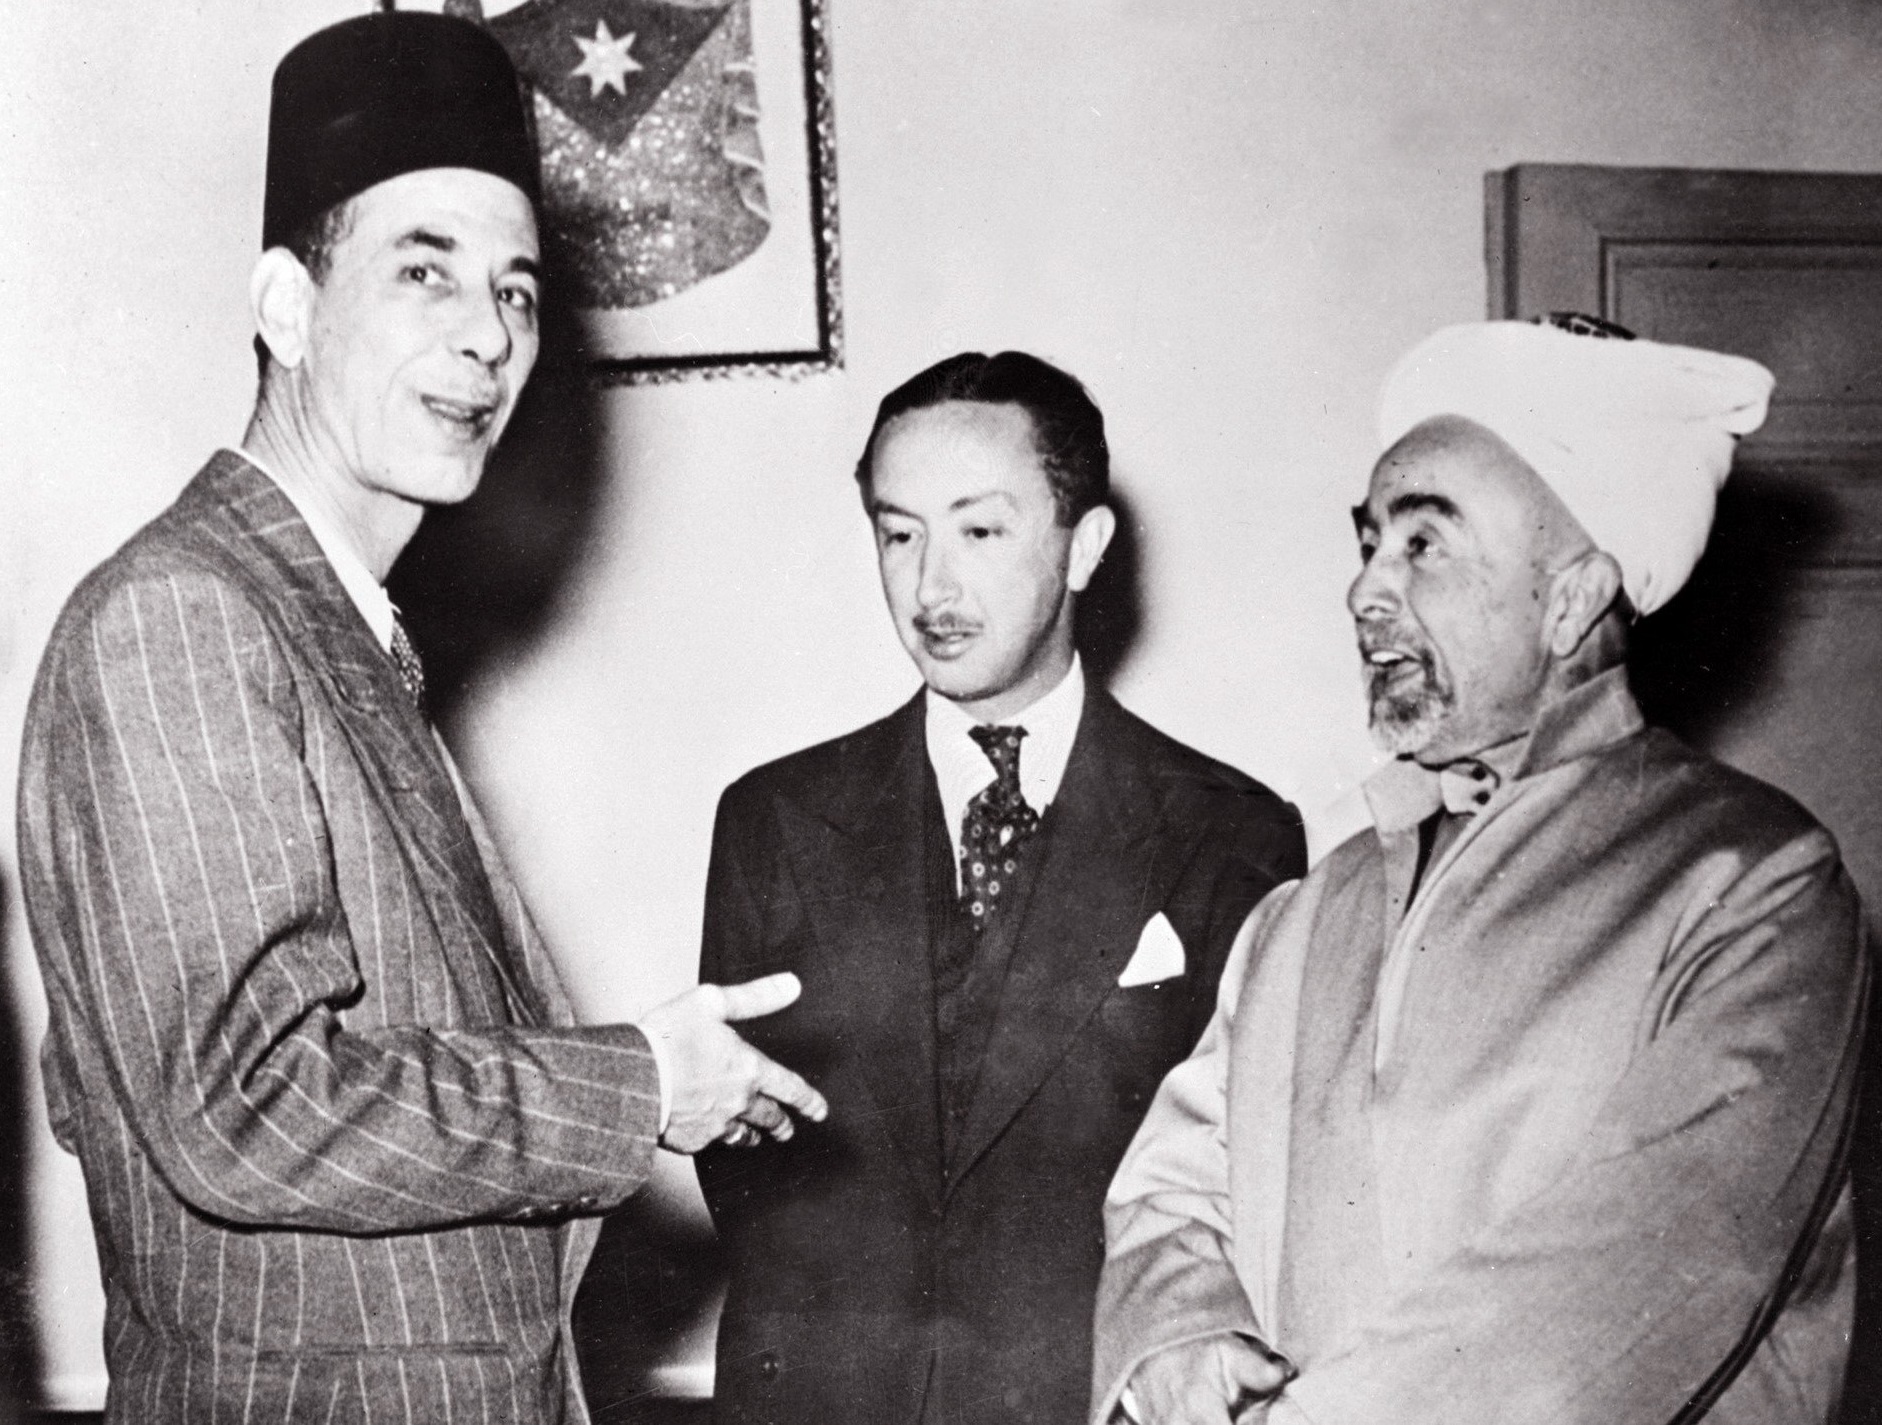 Le roi Abdallah de Transjordanie (à droite) s’entretient avec le secrétaire général de la Ligue arabe Abdel Rahman Azzam (à gauche) et le prince irakien Abdelilah ben Ali, le 13 mai 1948.